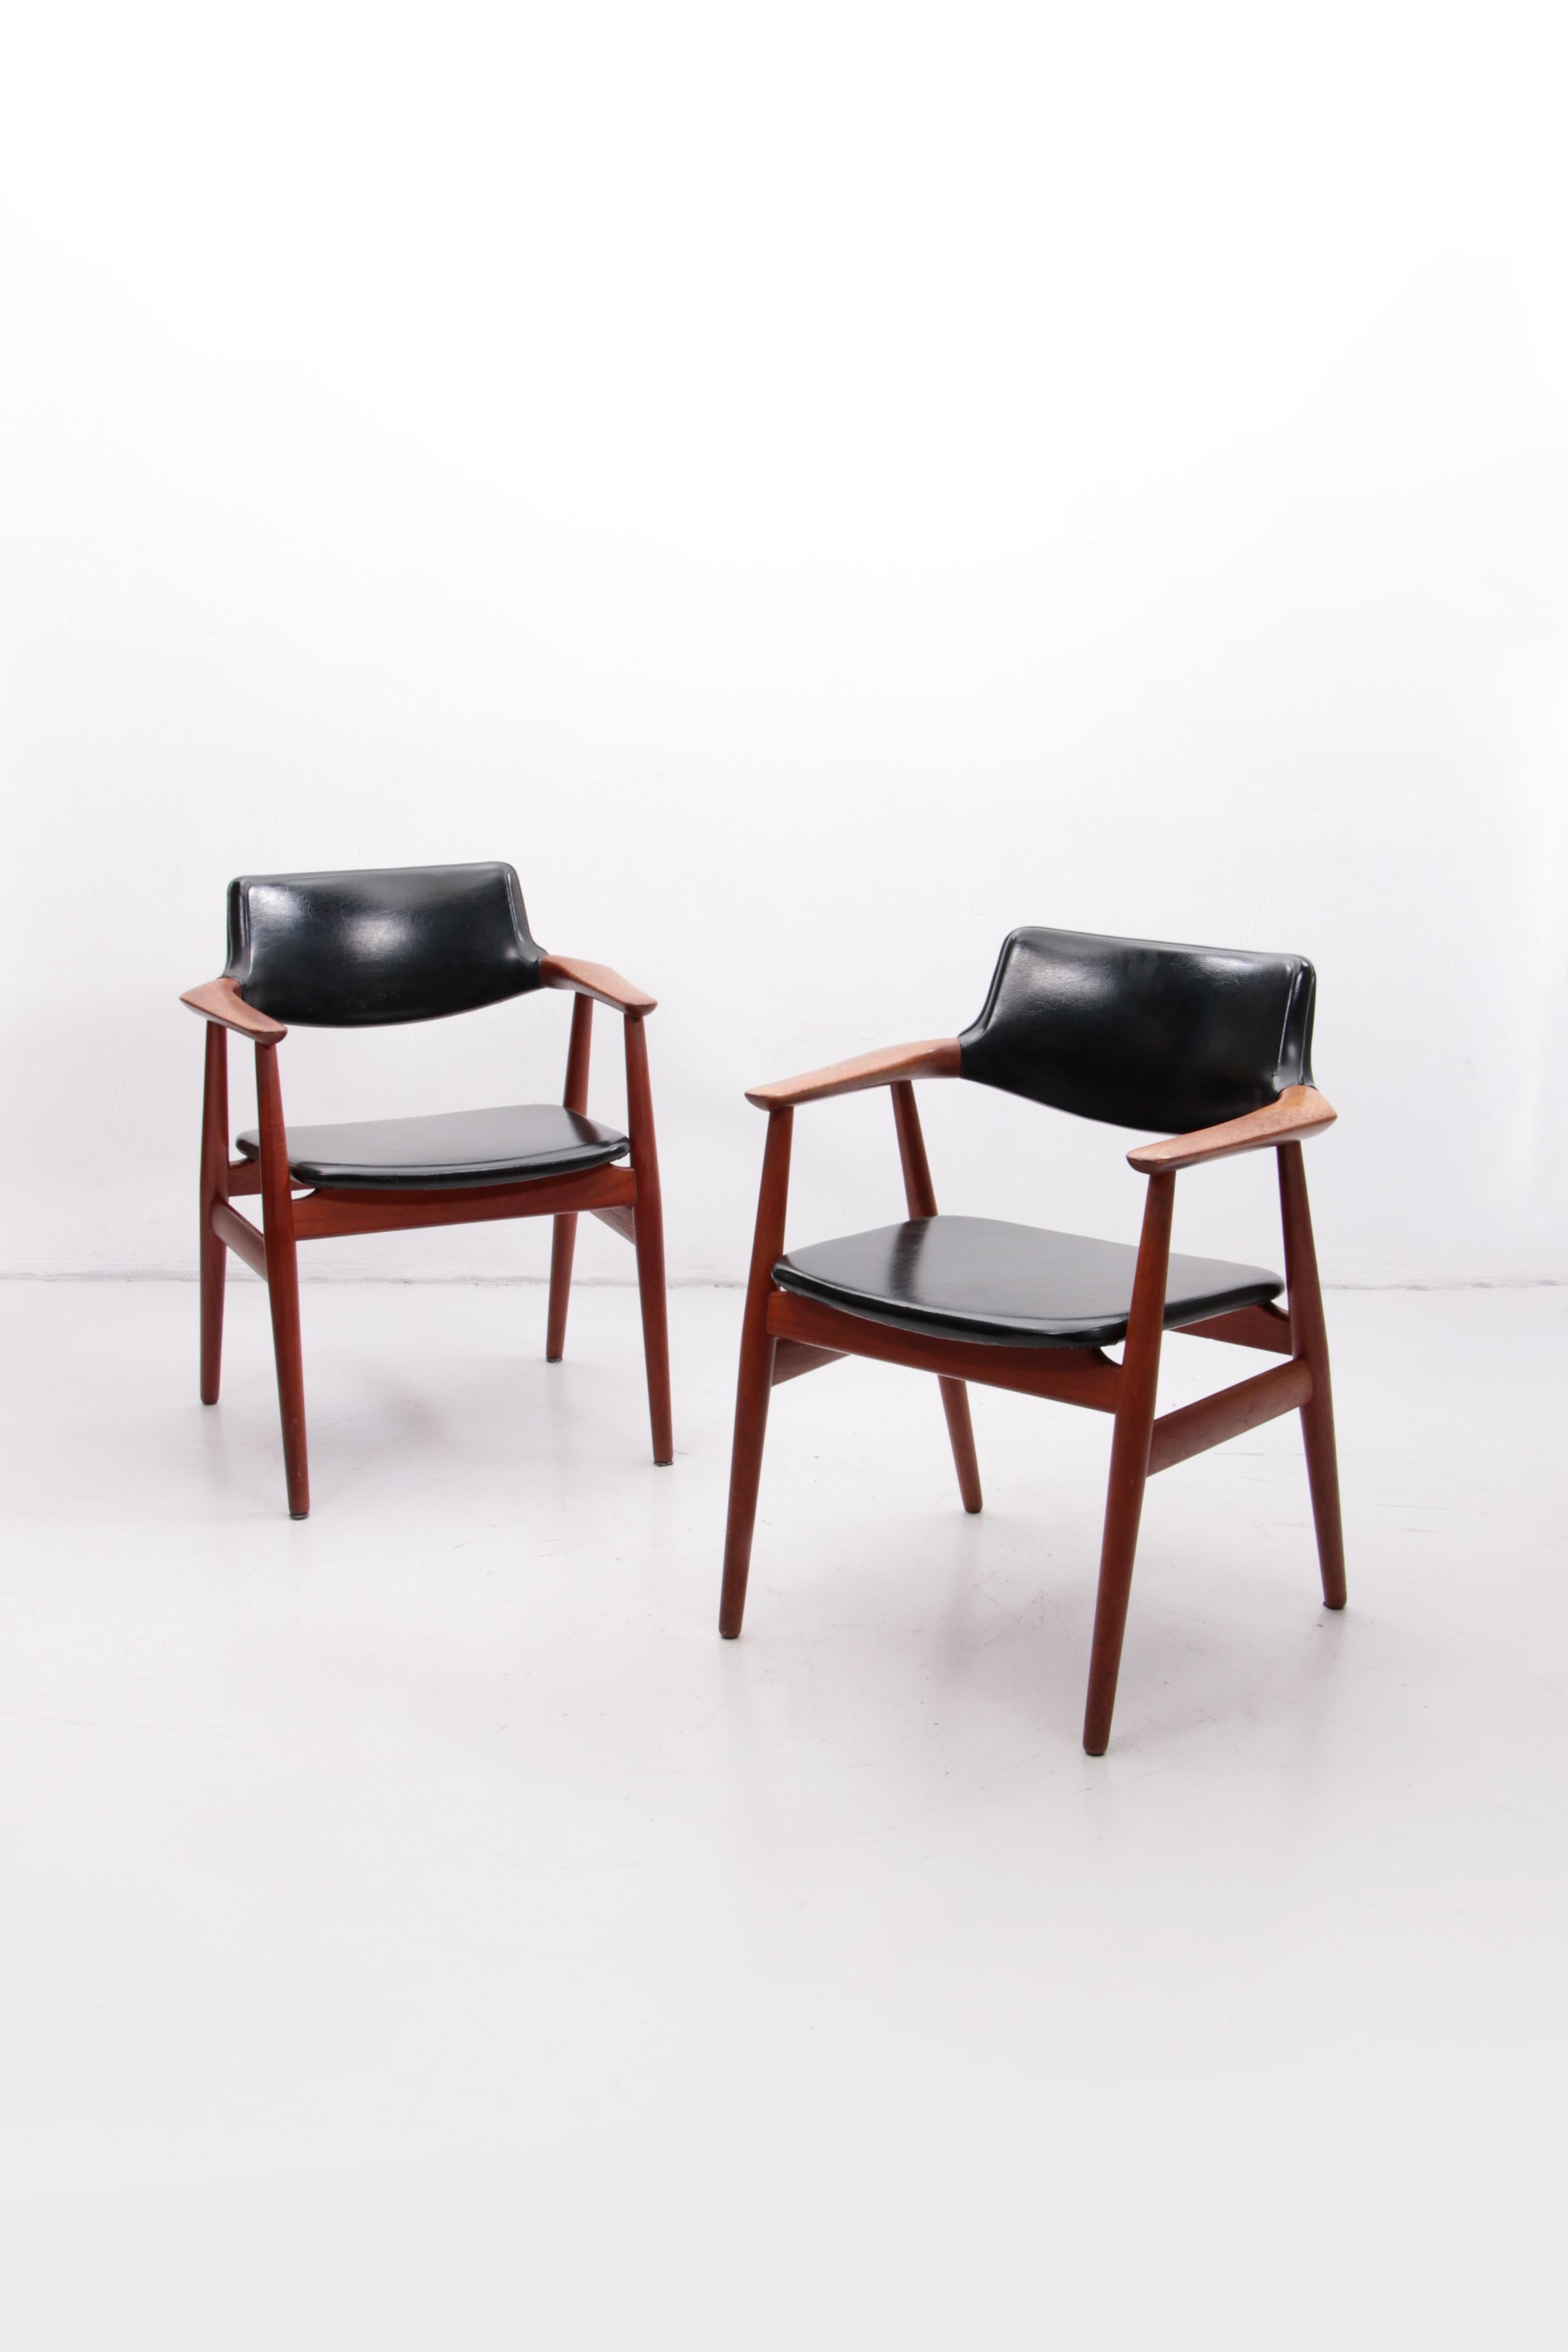 Dänische Teakholzsessel von Svend Age Eriksen für die Glostrup Møbelfabrik aus den 1960er Jahren. Die Stühle sind separat zu verkaufen.
Der Preis gilt für 1 Stuhl.
Ein schönes Stück dänisches Design aus der Mitte des Jahrhunderts.
Dies ist das